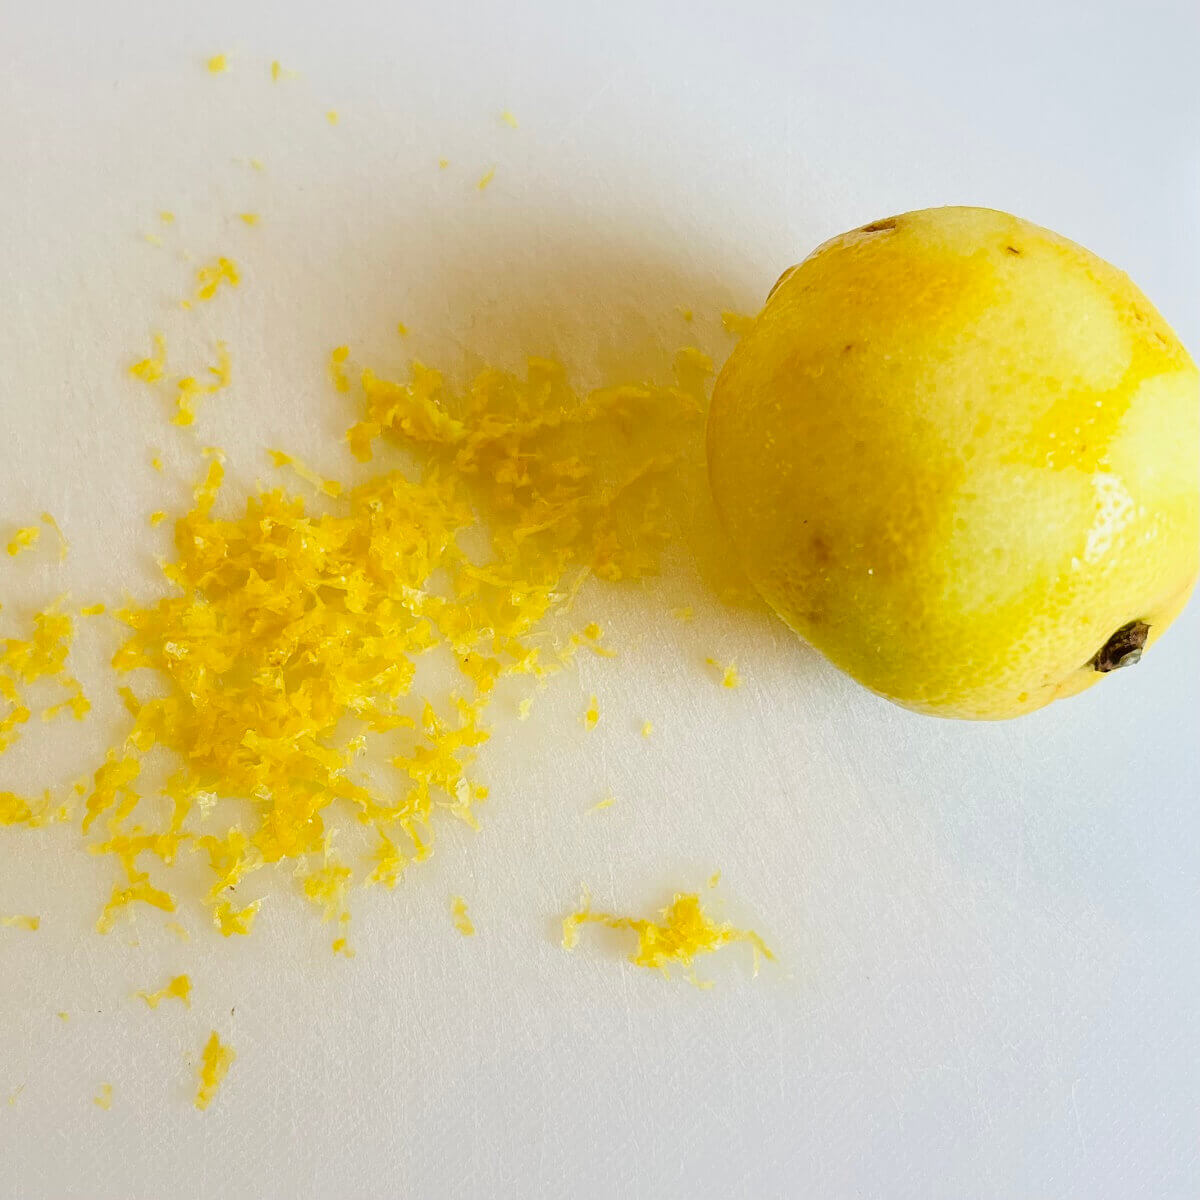 A lemon next to a pile of lemon zest.